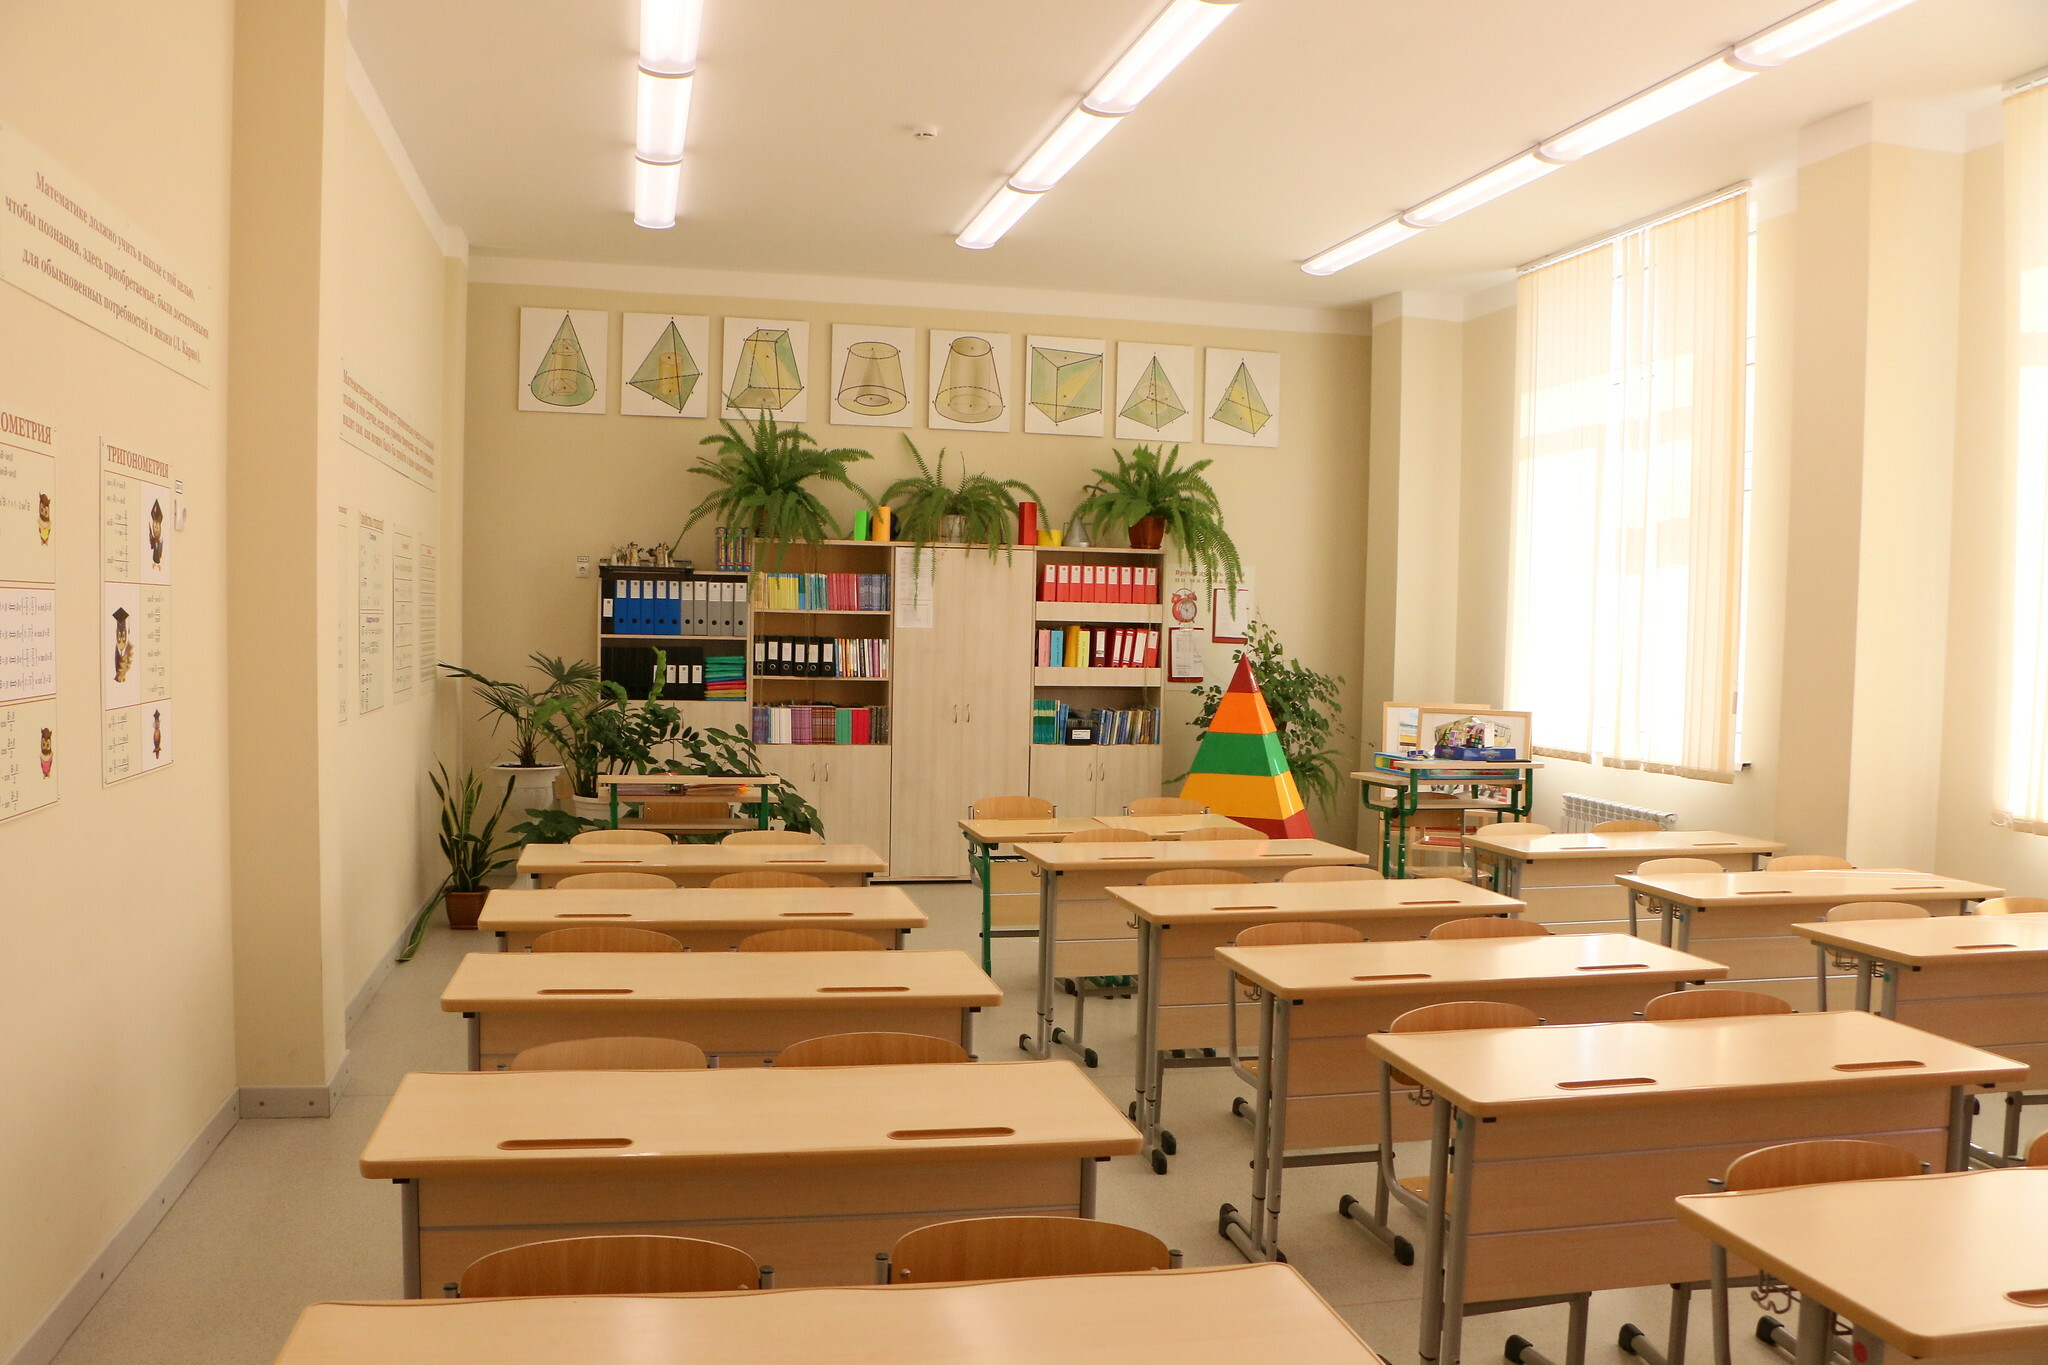 Строительство новой школы в Тюмени обойдется бюджету области в 1 млрд рублей